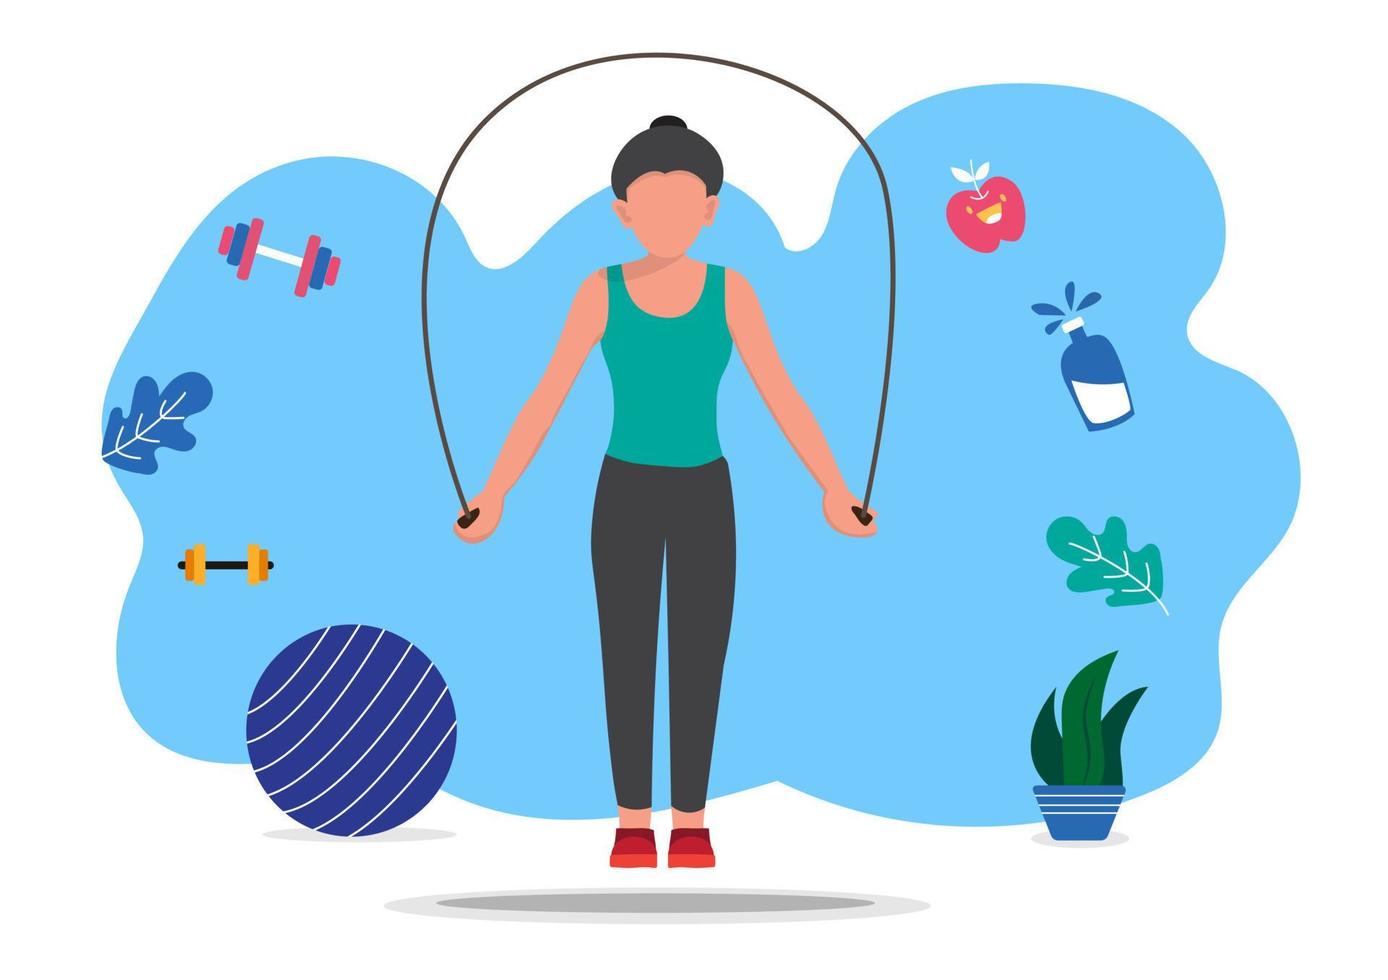 fille maigre faisant de l'exercice avec une corde à sauter une femme en tenue de sport bouge et saute joyeusement. illustration vectorielle vecteur